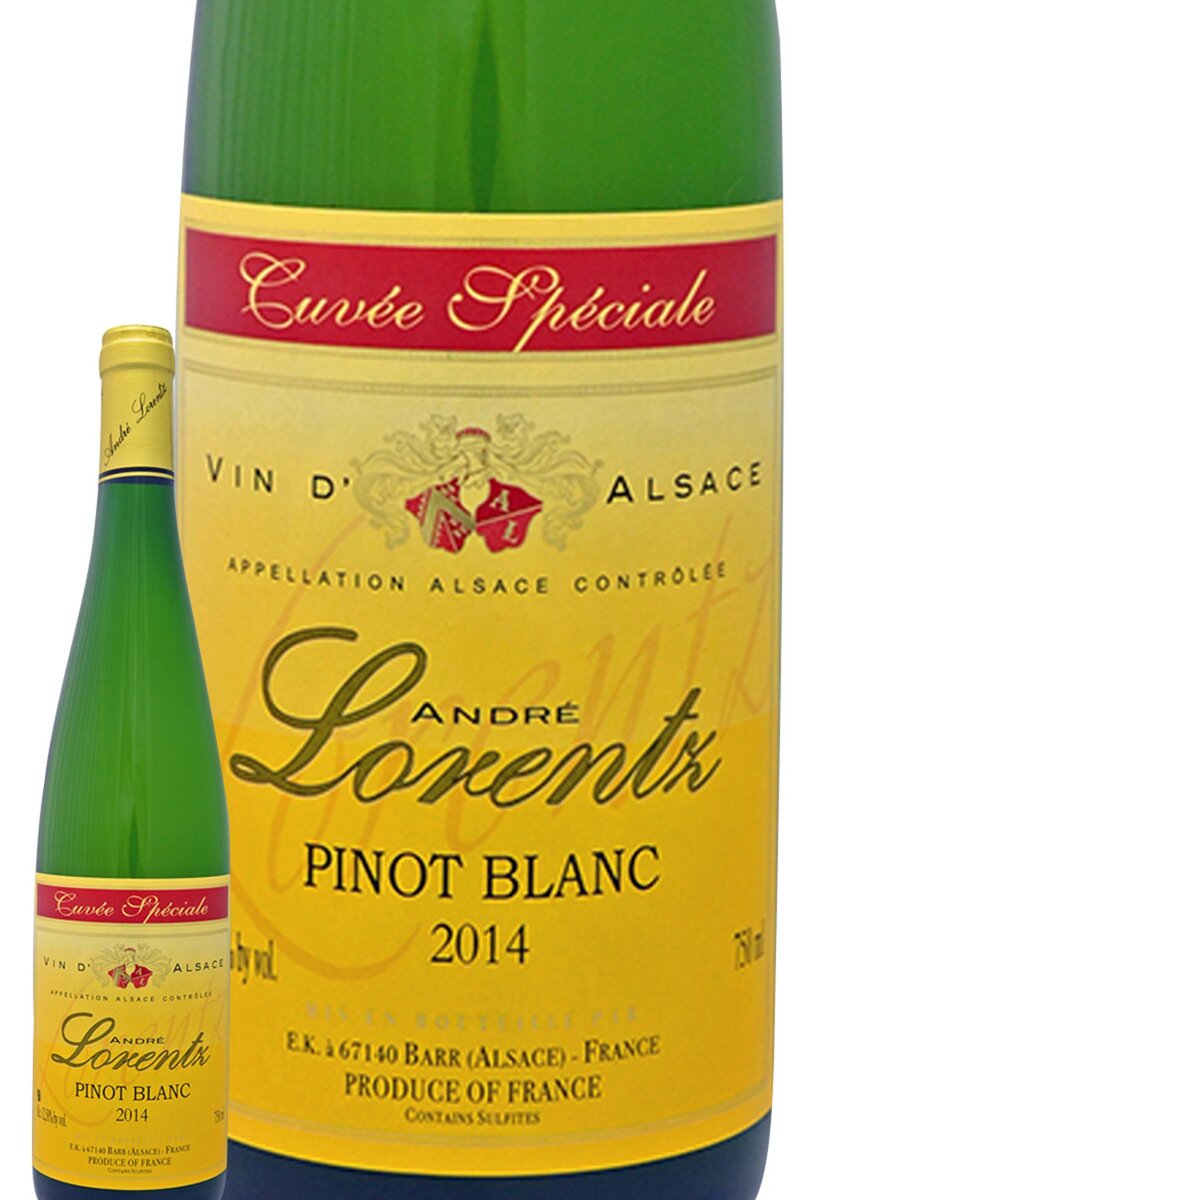 André Lorentz Pinot Blanc Cuvée Spéciale Blanc 2014